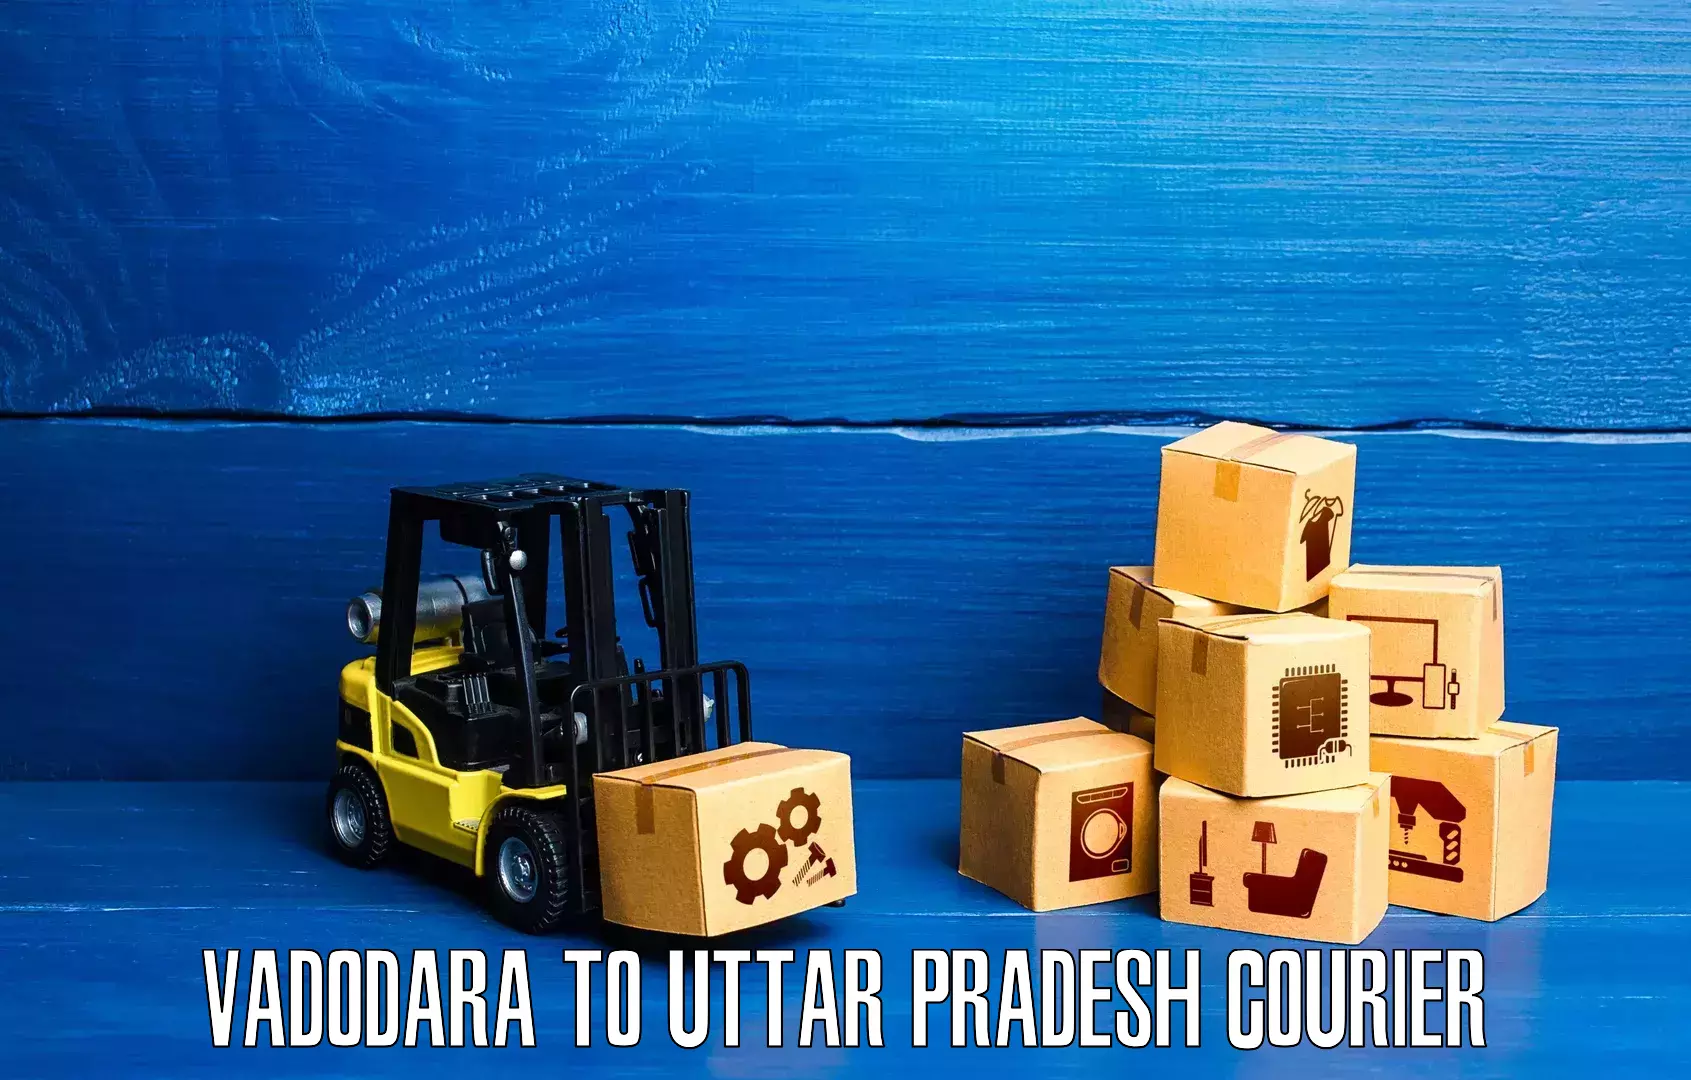 Rapid shipping services Vadodara to Agra